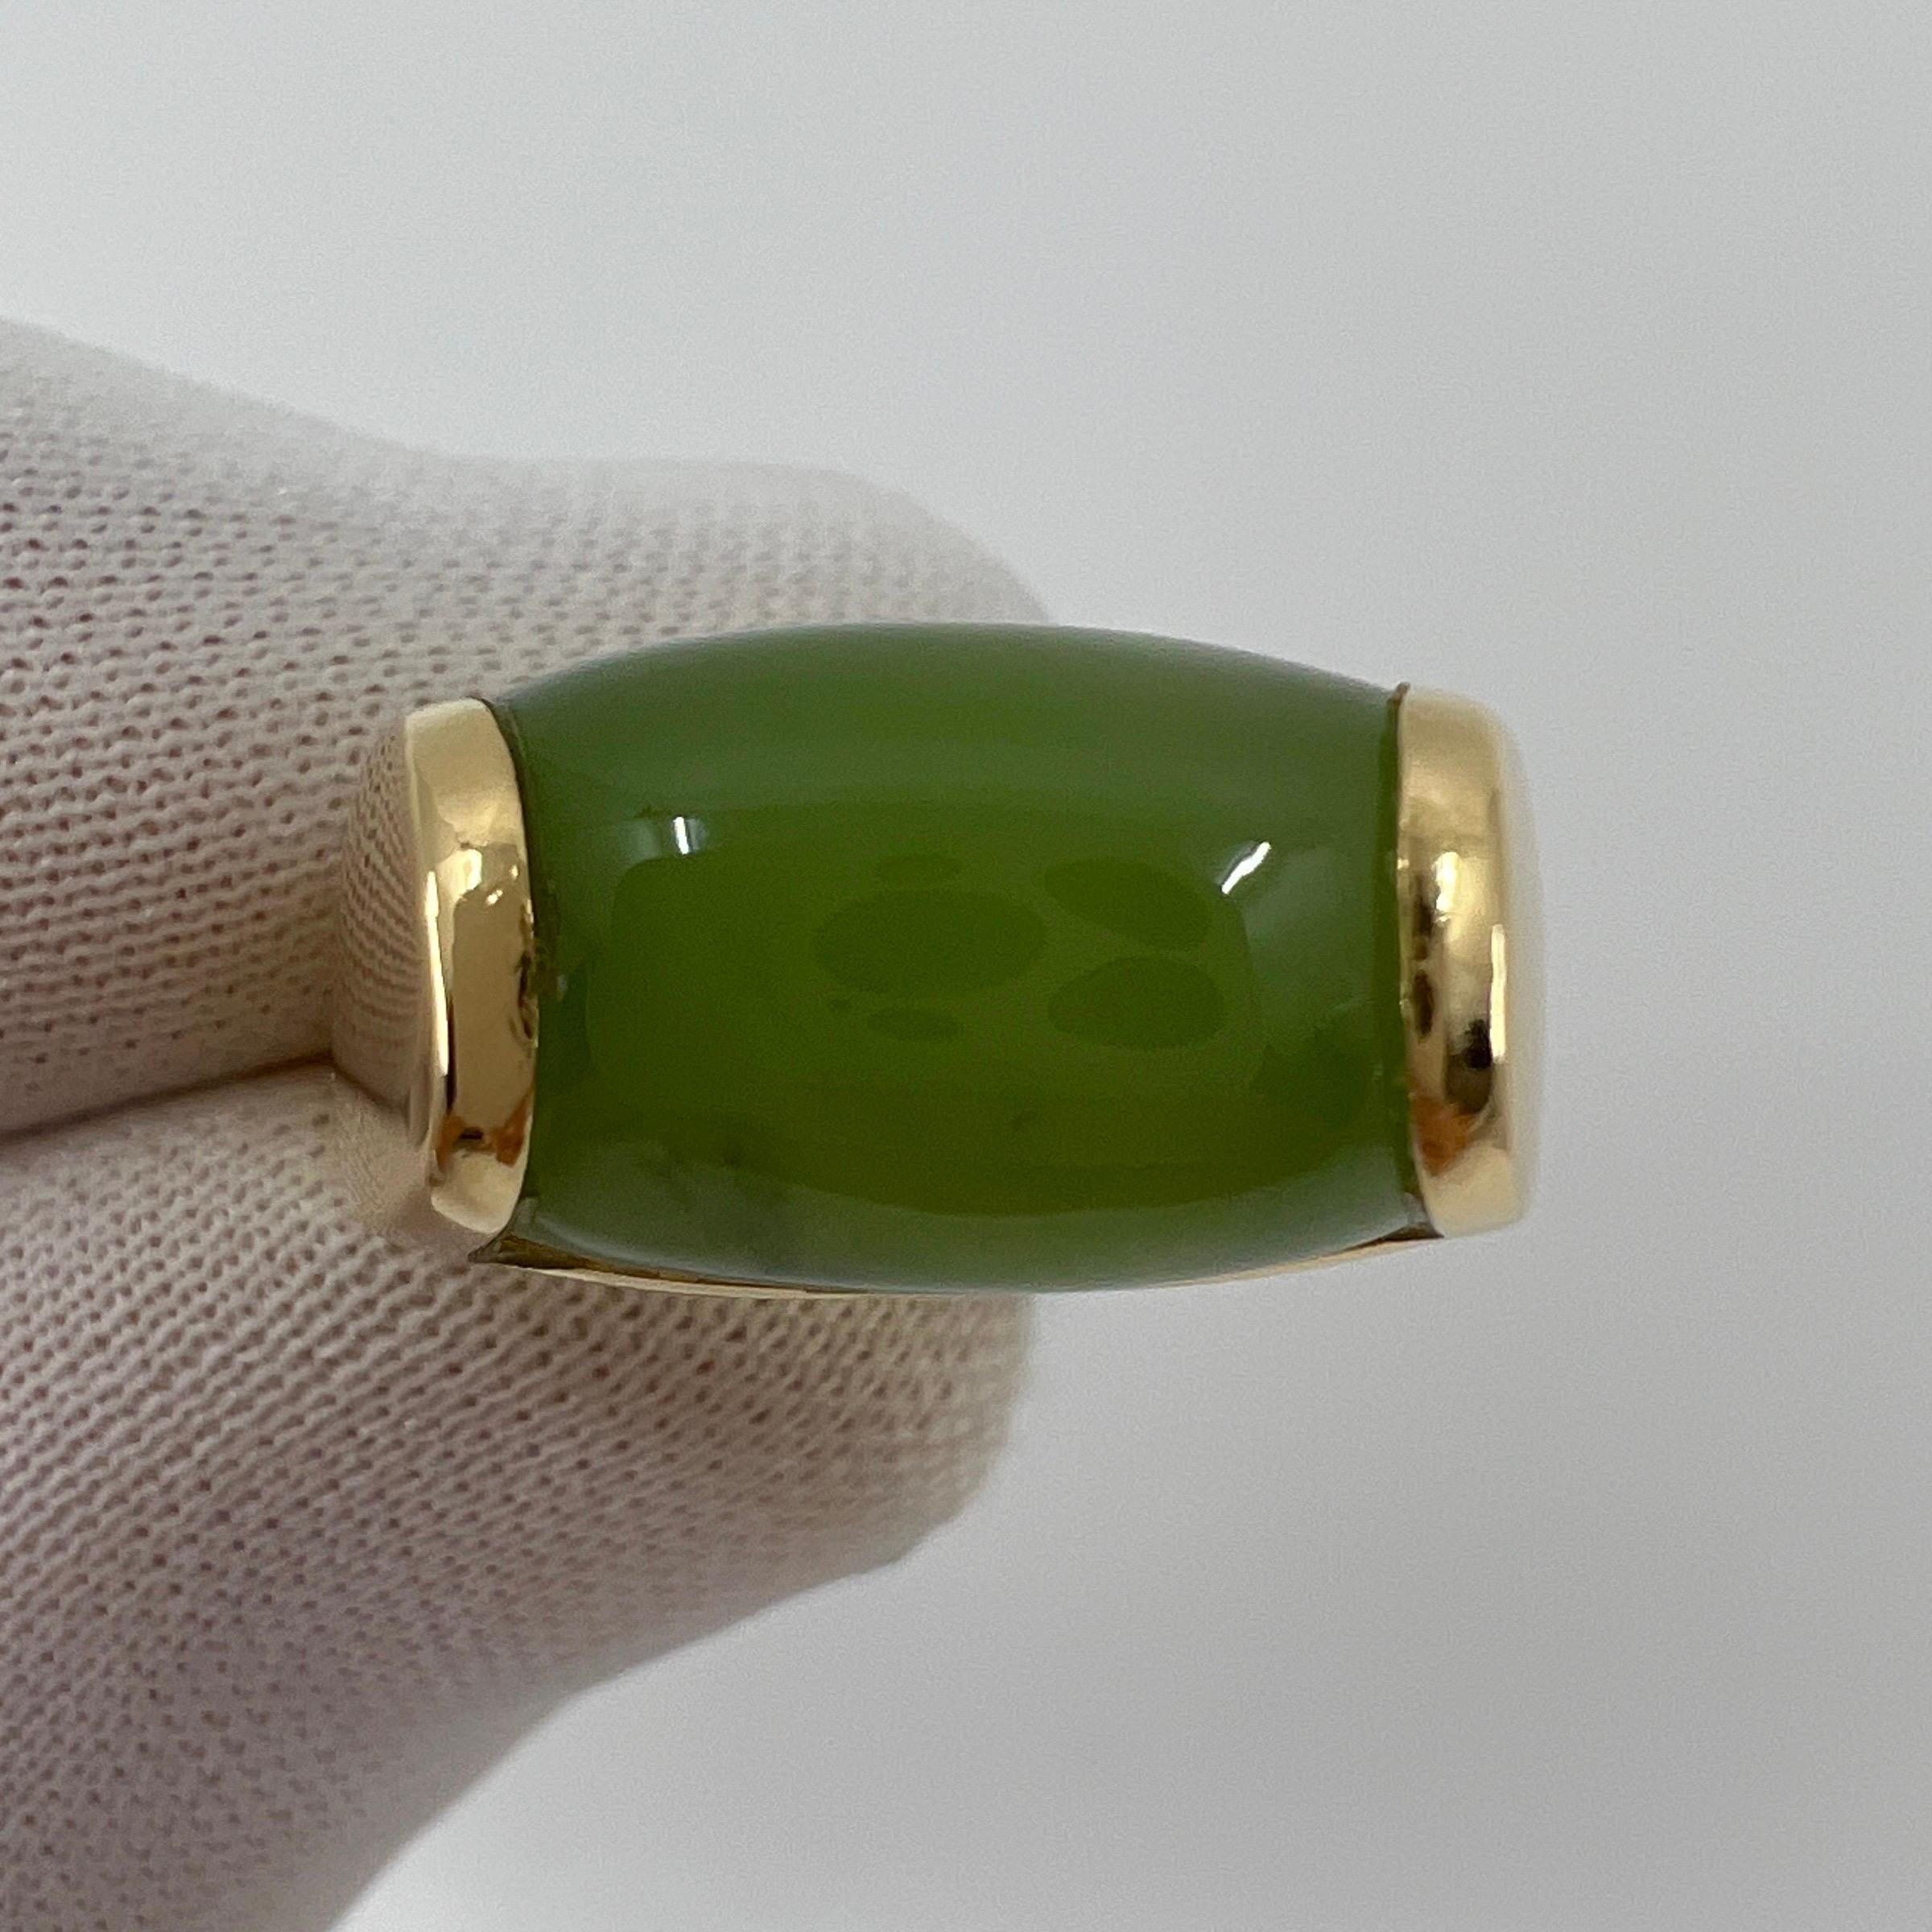 Rare Bvlgari Bulgari Green Jade Tronchetto 18 Karat Yellow Gold Ring with Box 4